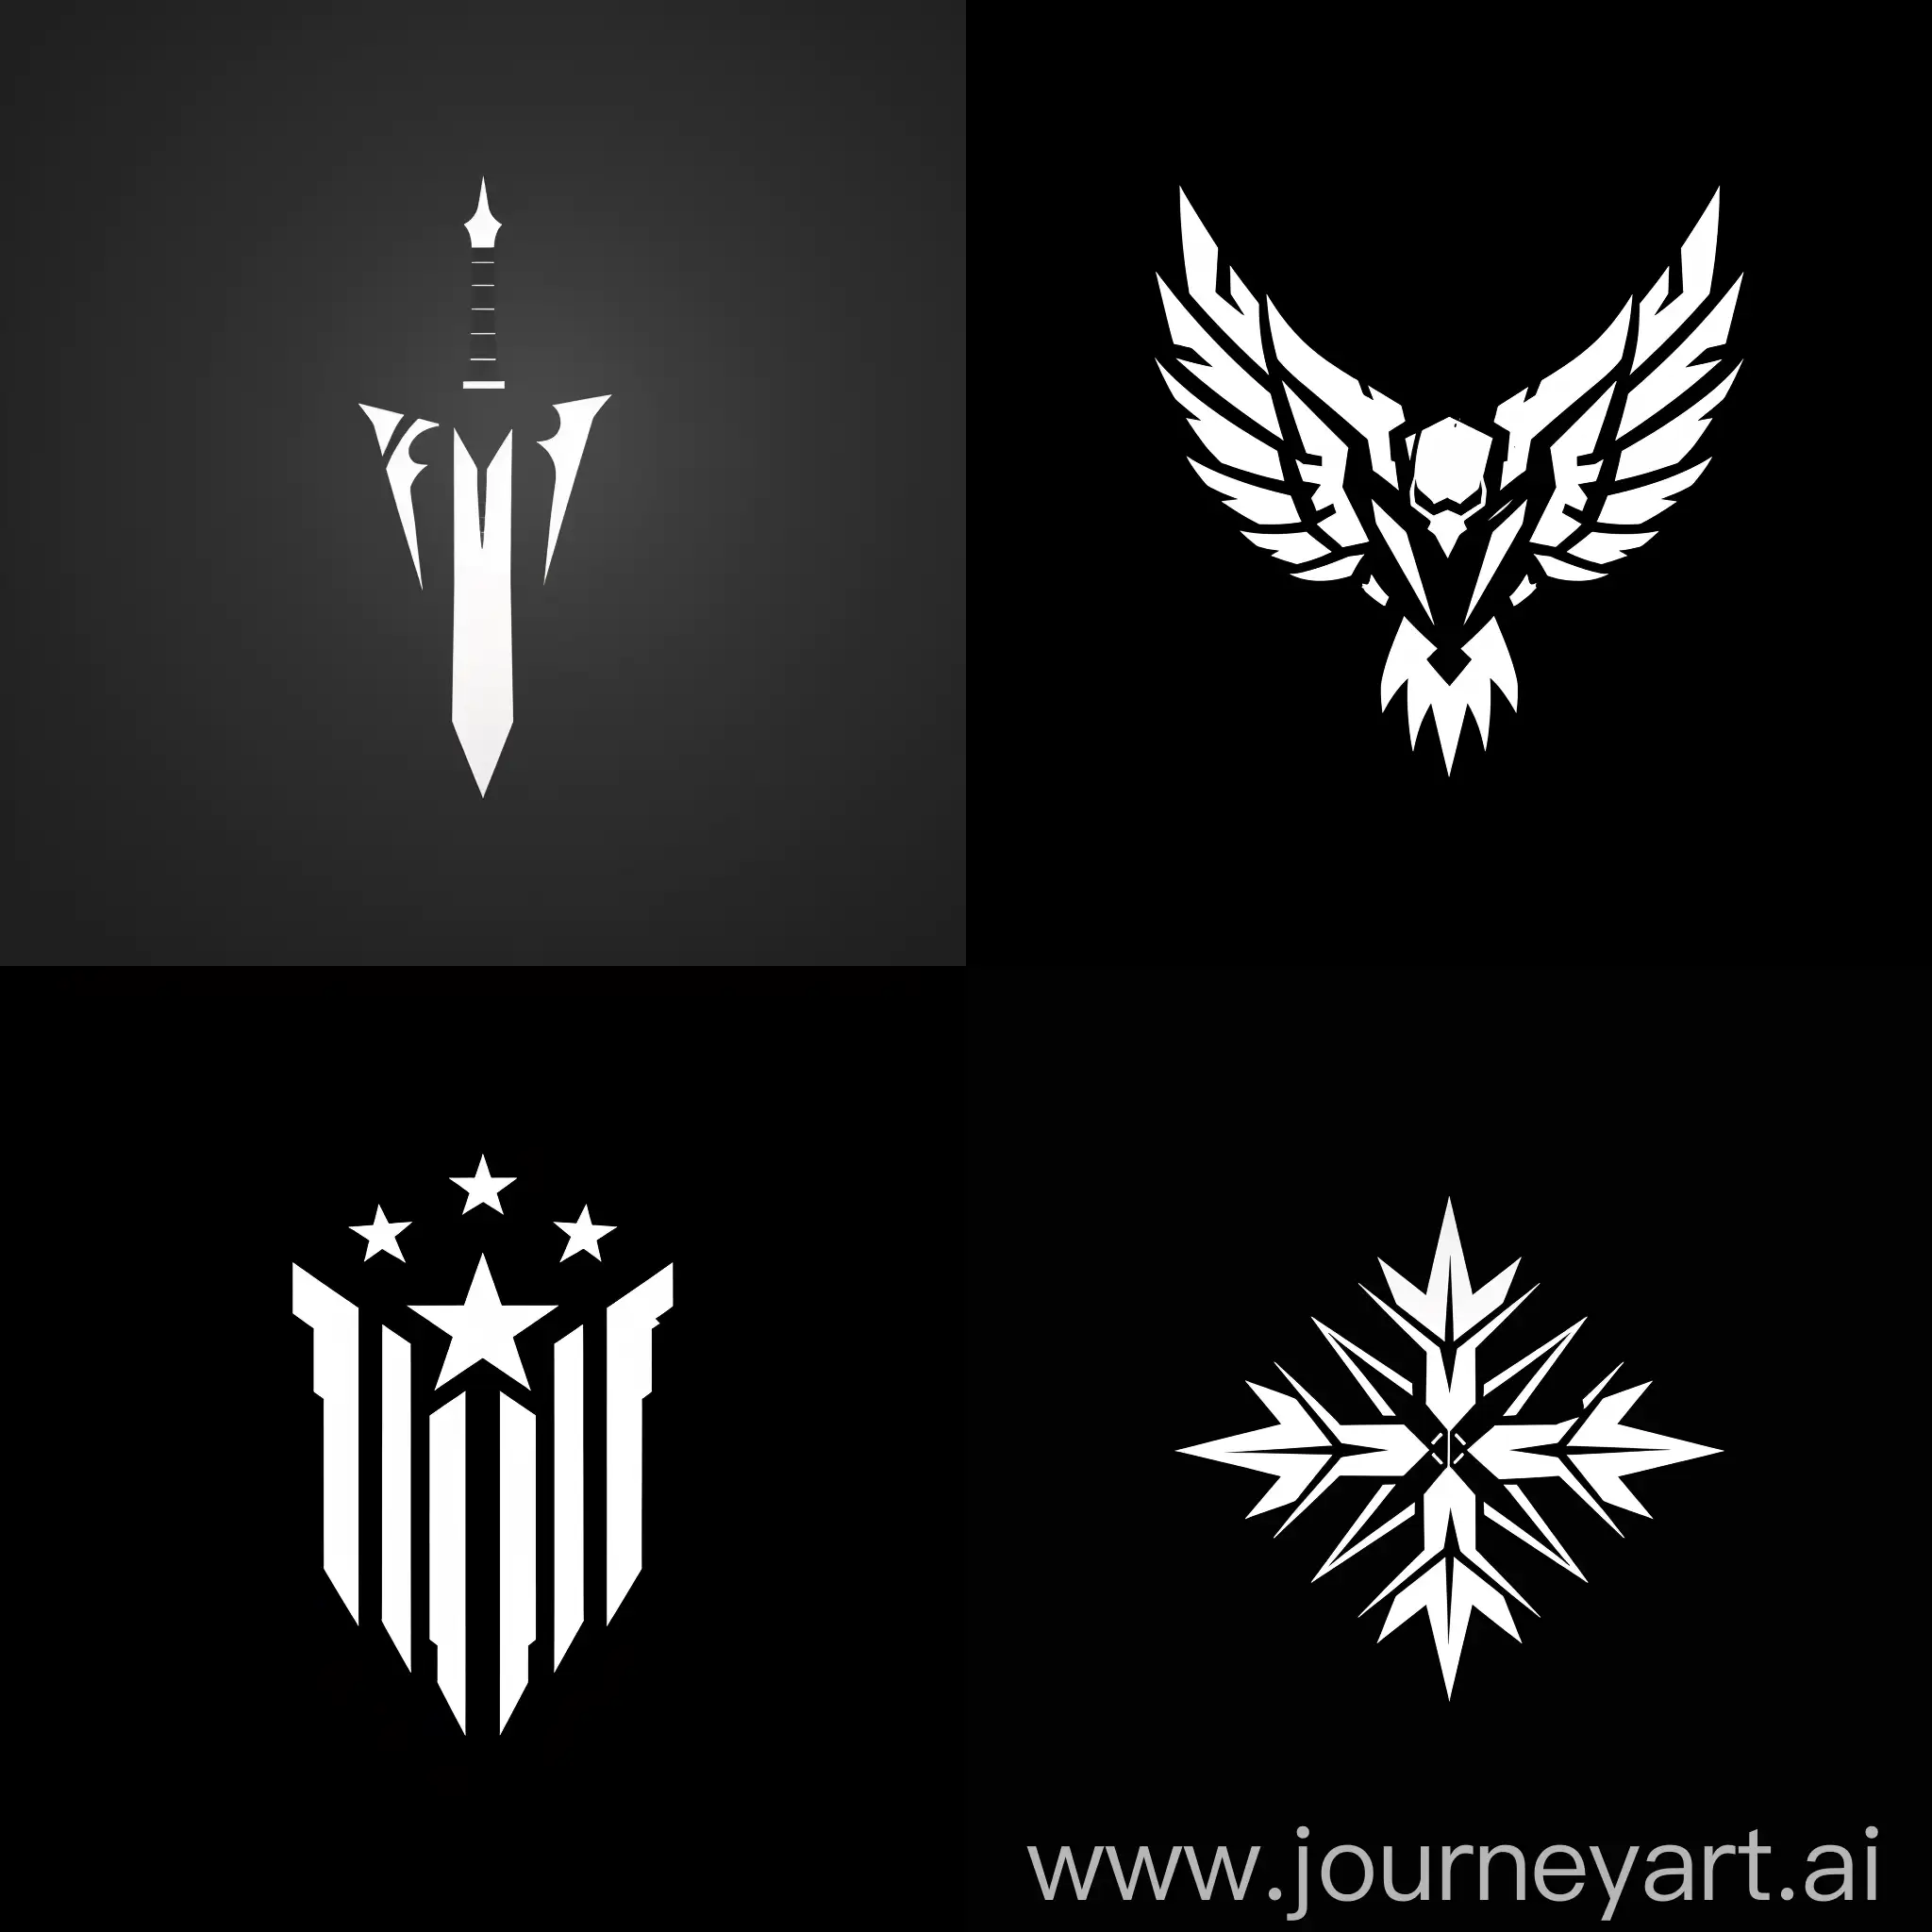 Simple-Political-War-Game-Logo-on-Black-Background